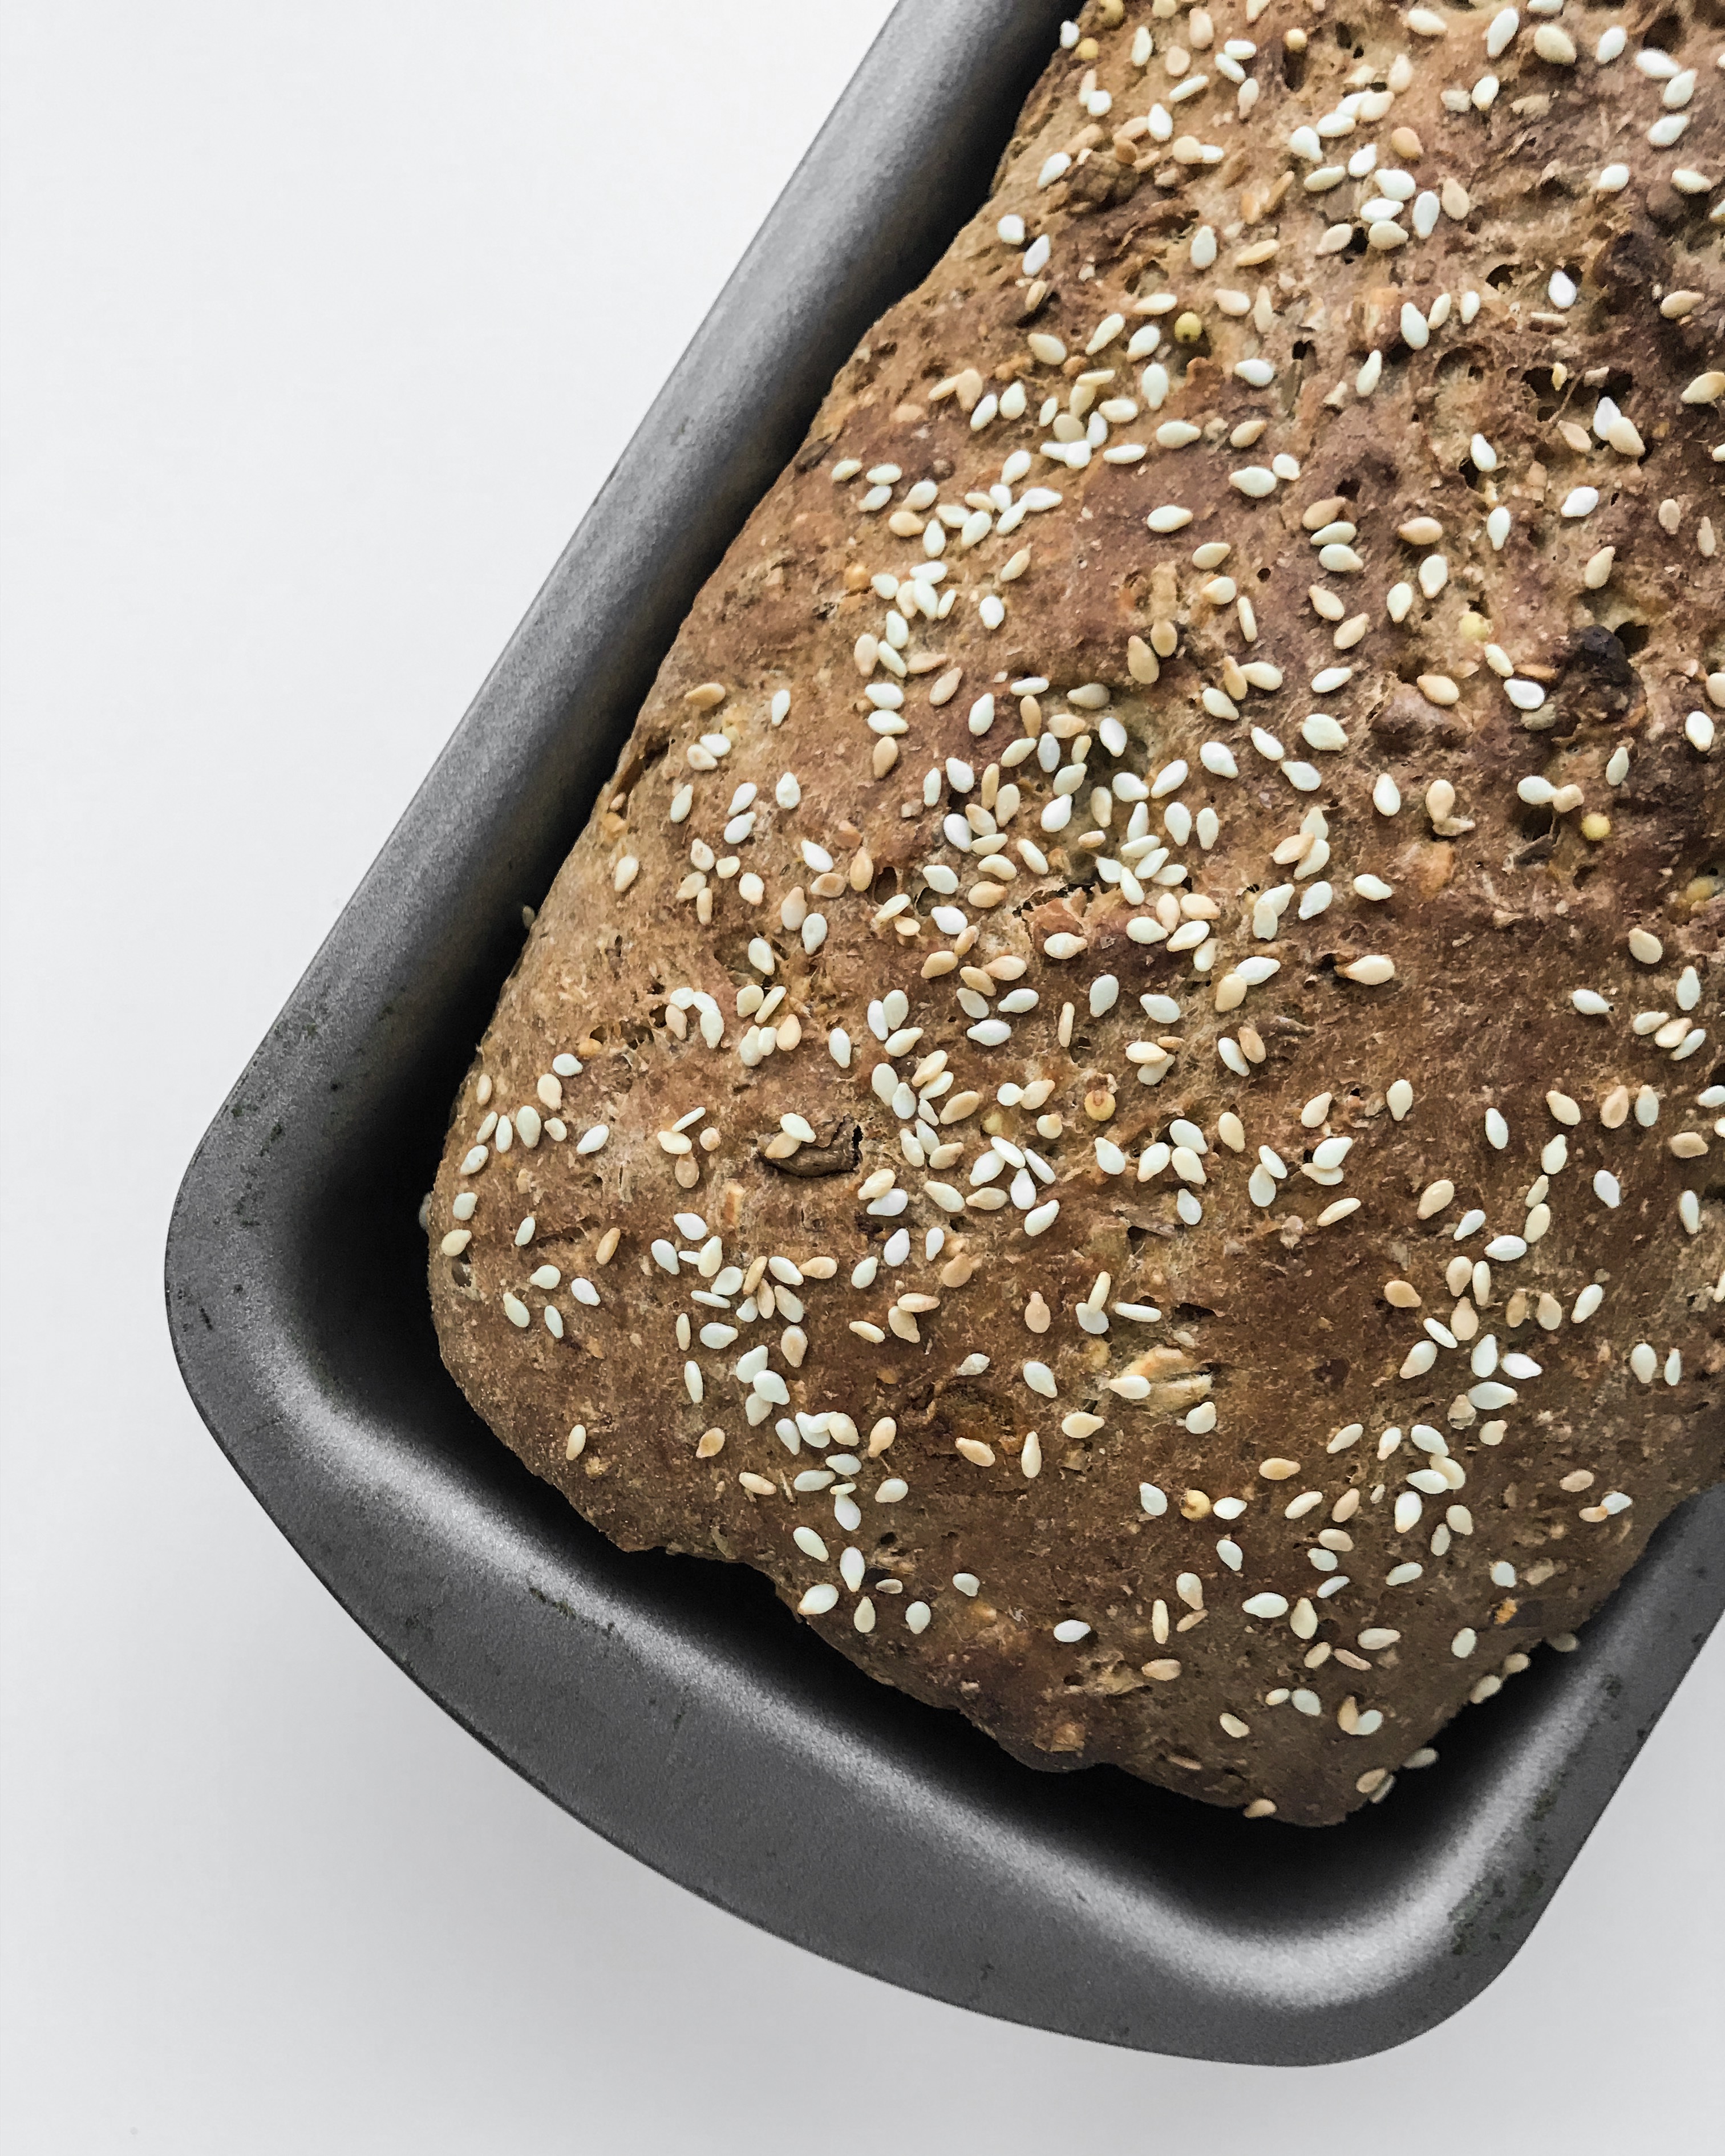 Seeded wholegrain bread - Tofino bread